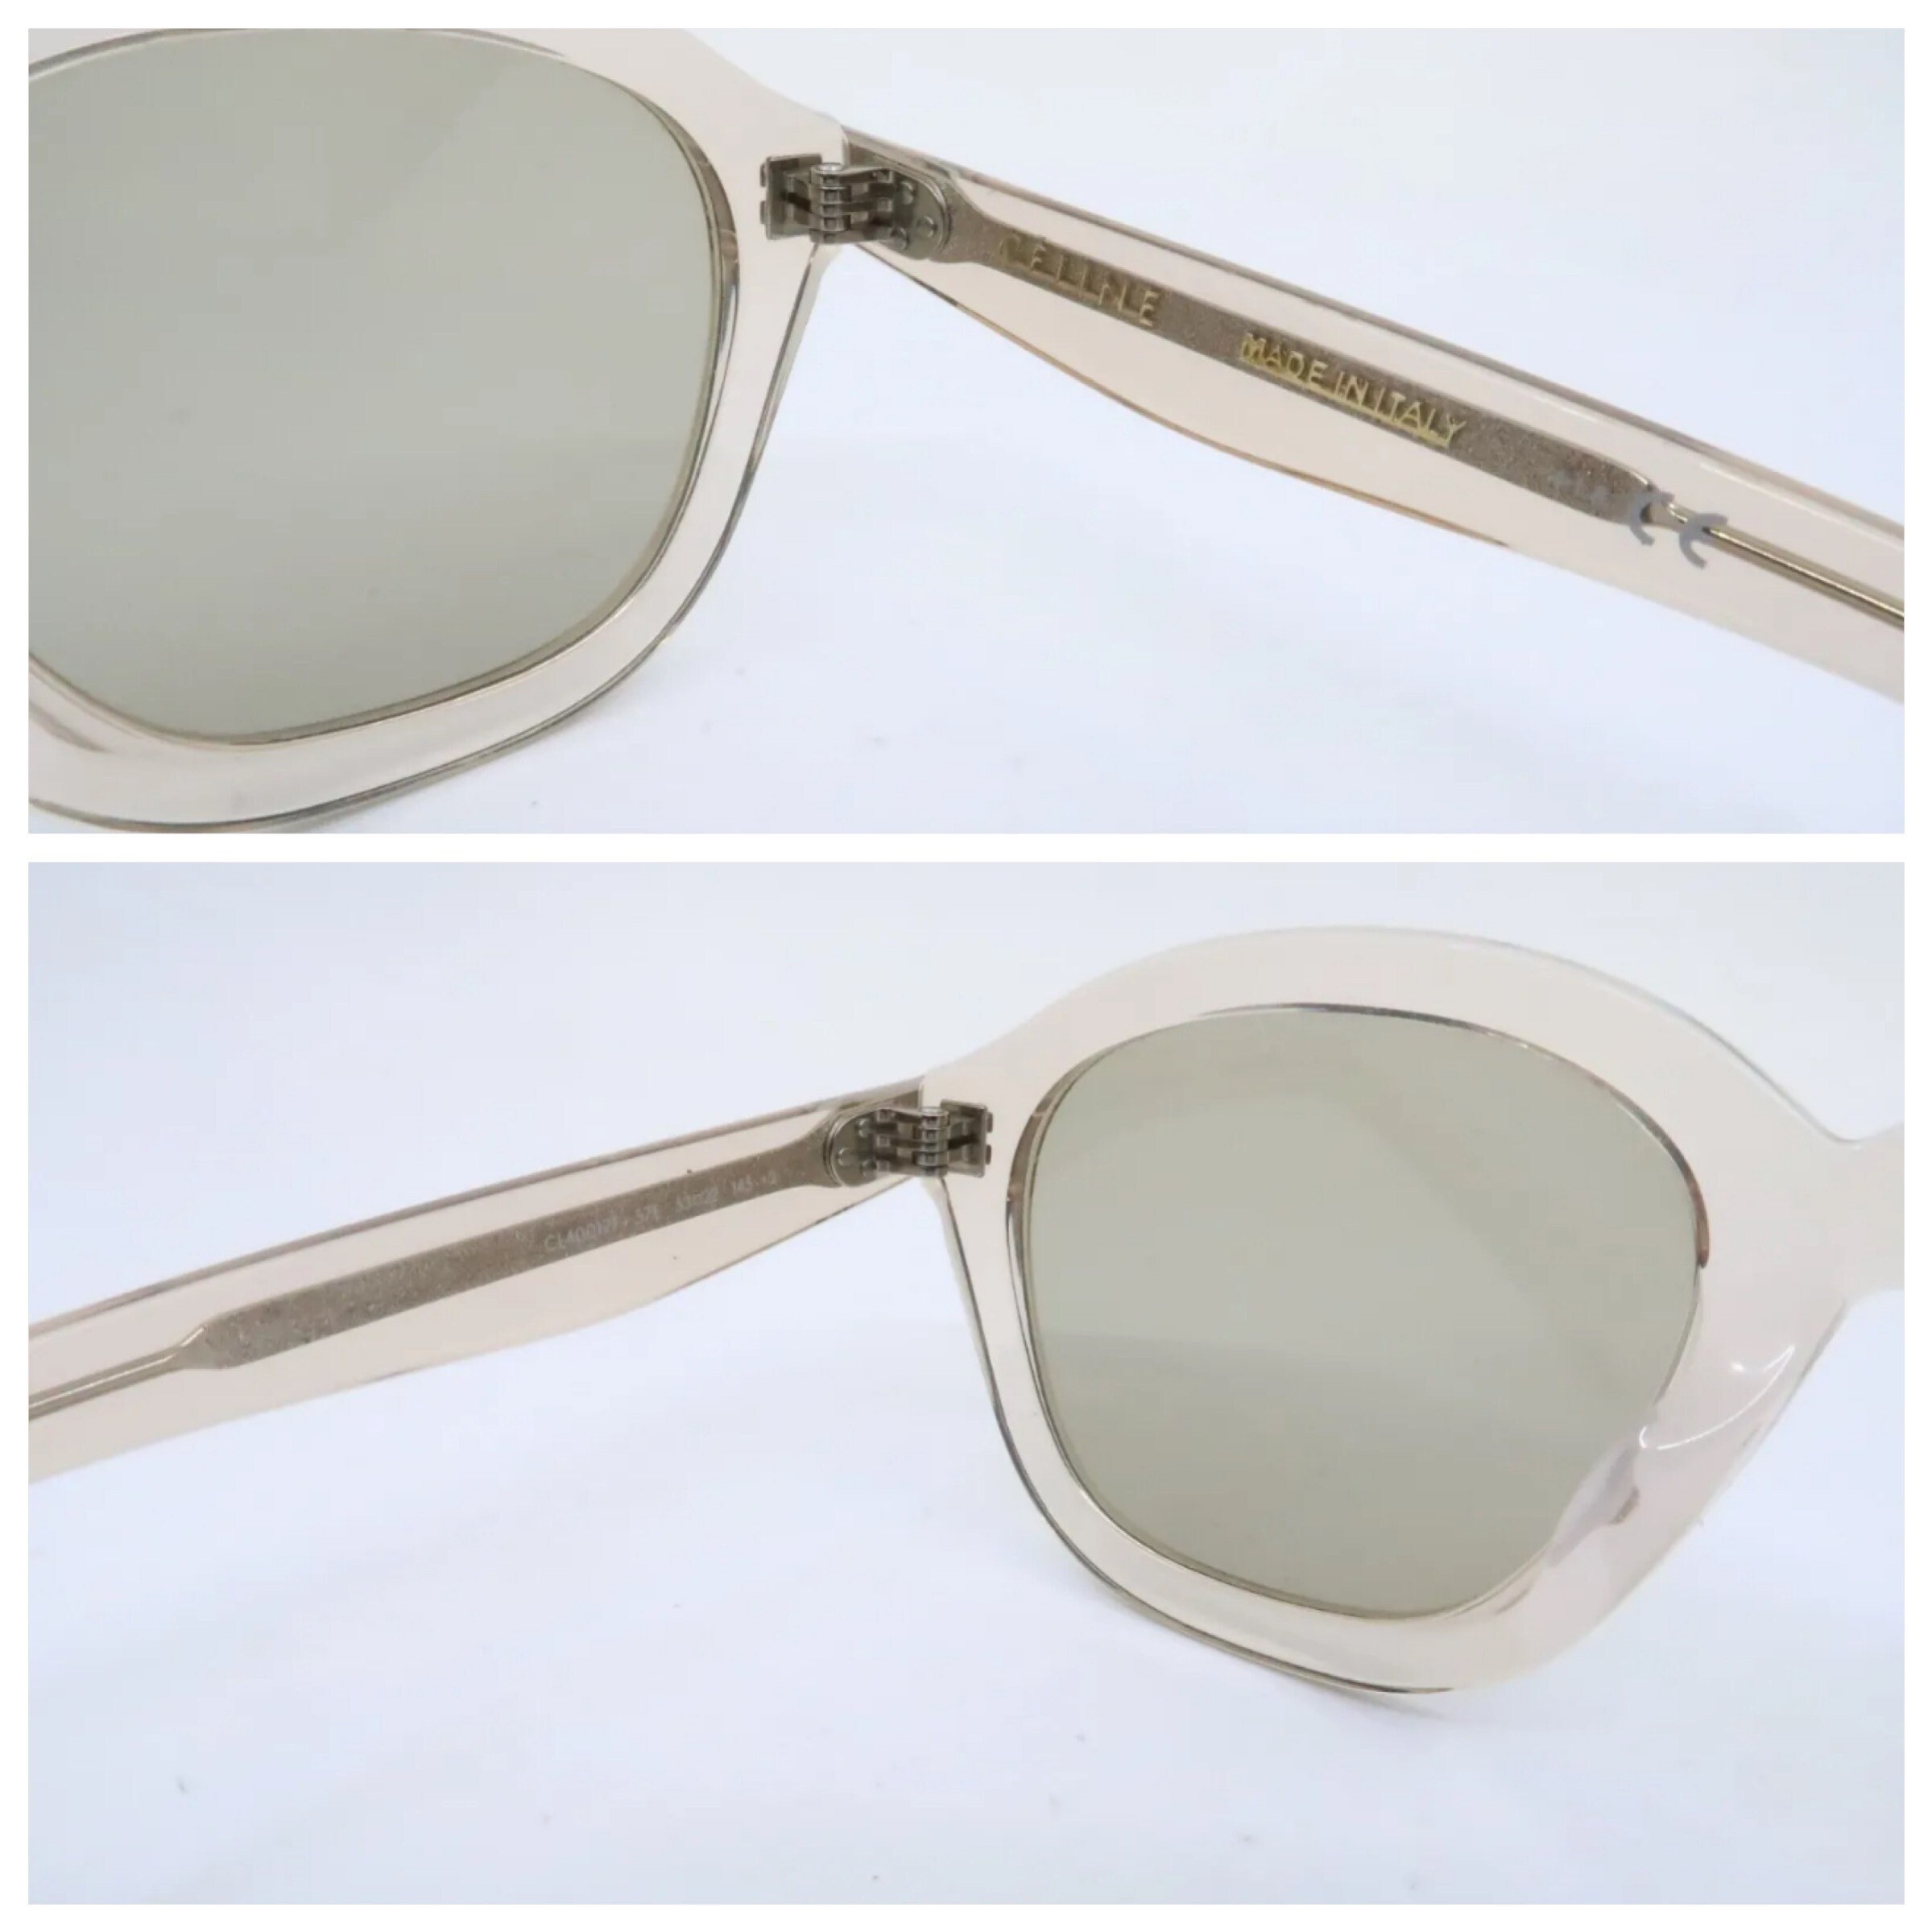 Celine - Authenticated Sunglasses - Plastic Blue Plain for Women, Never Worn